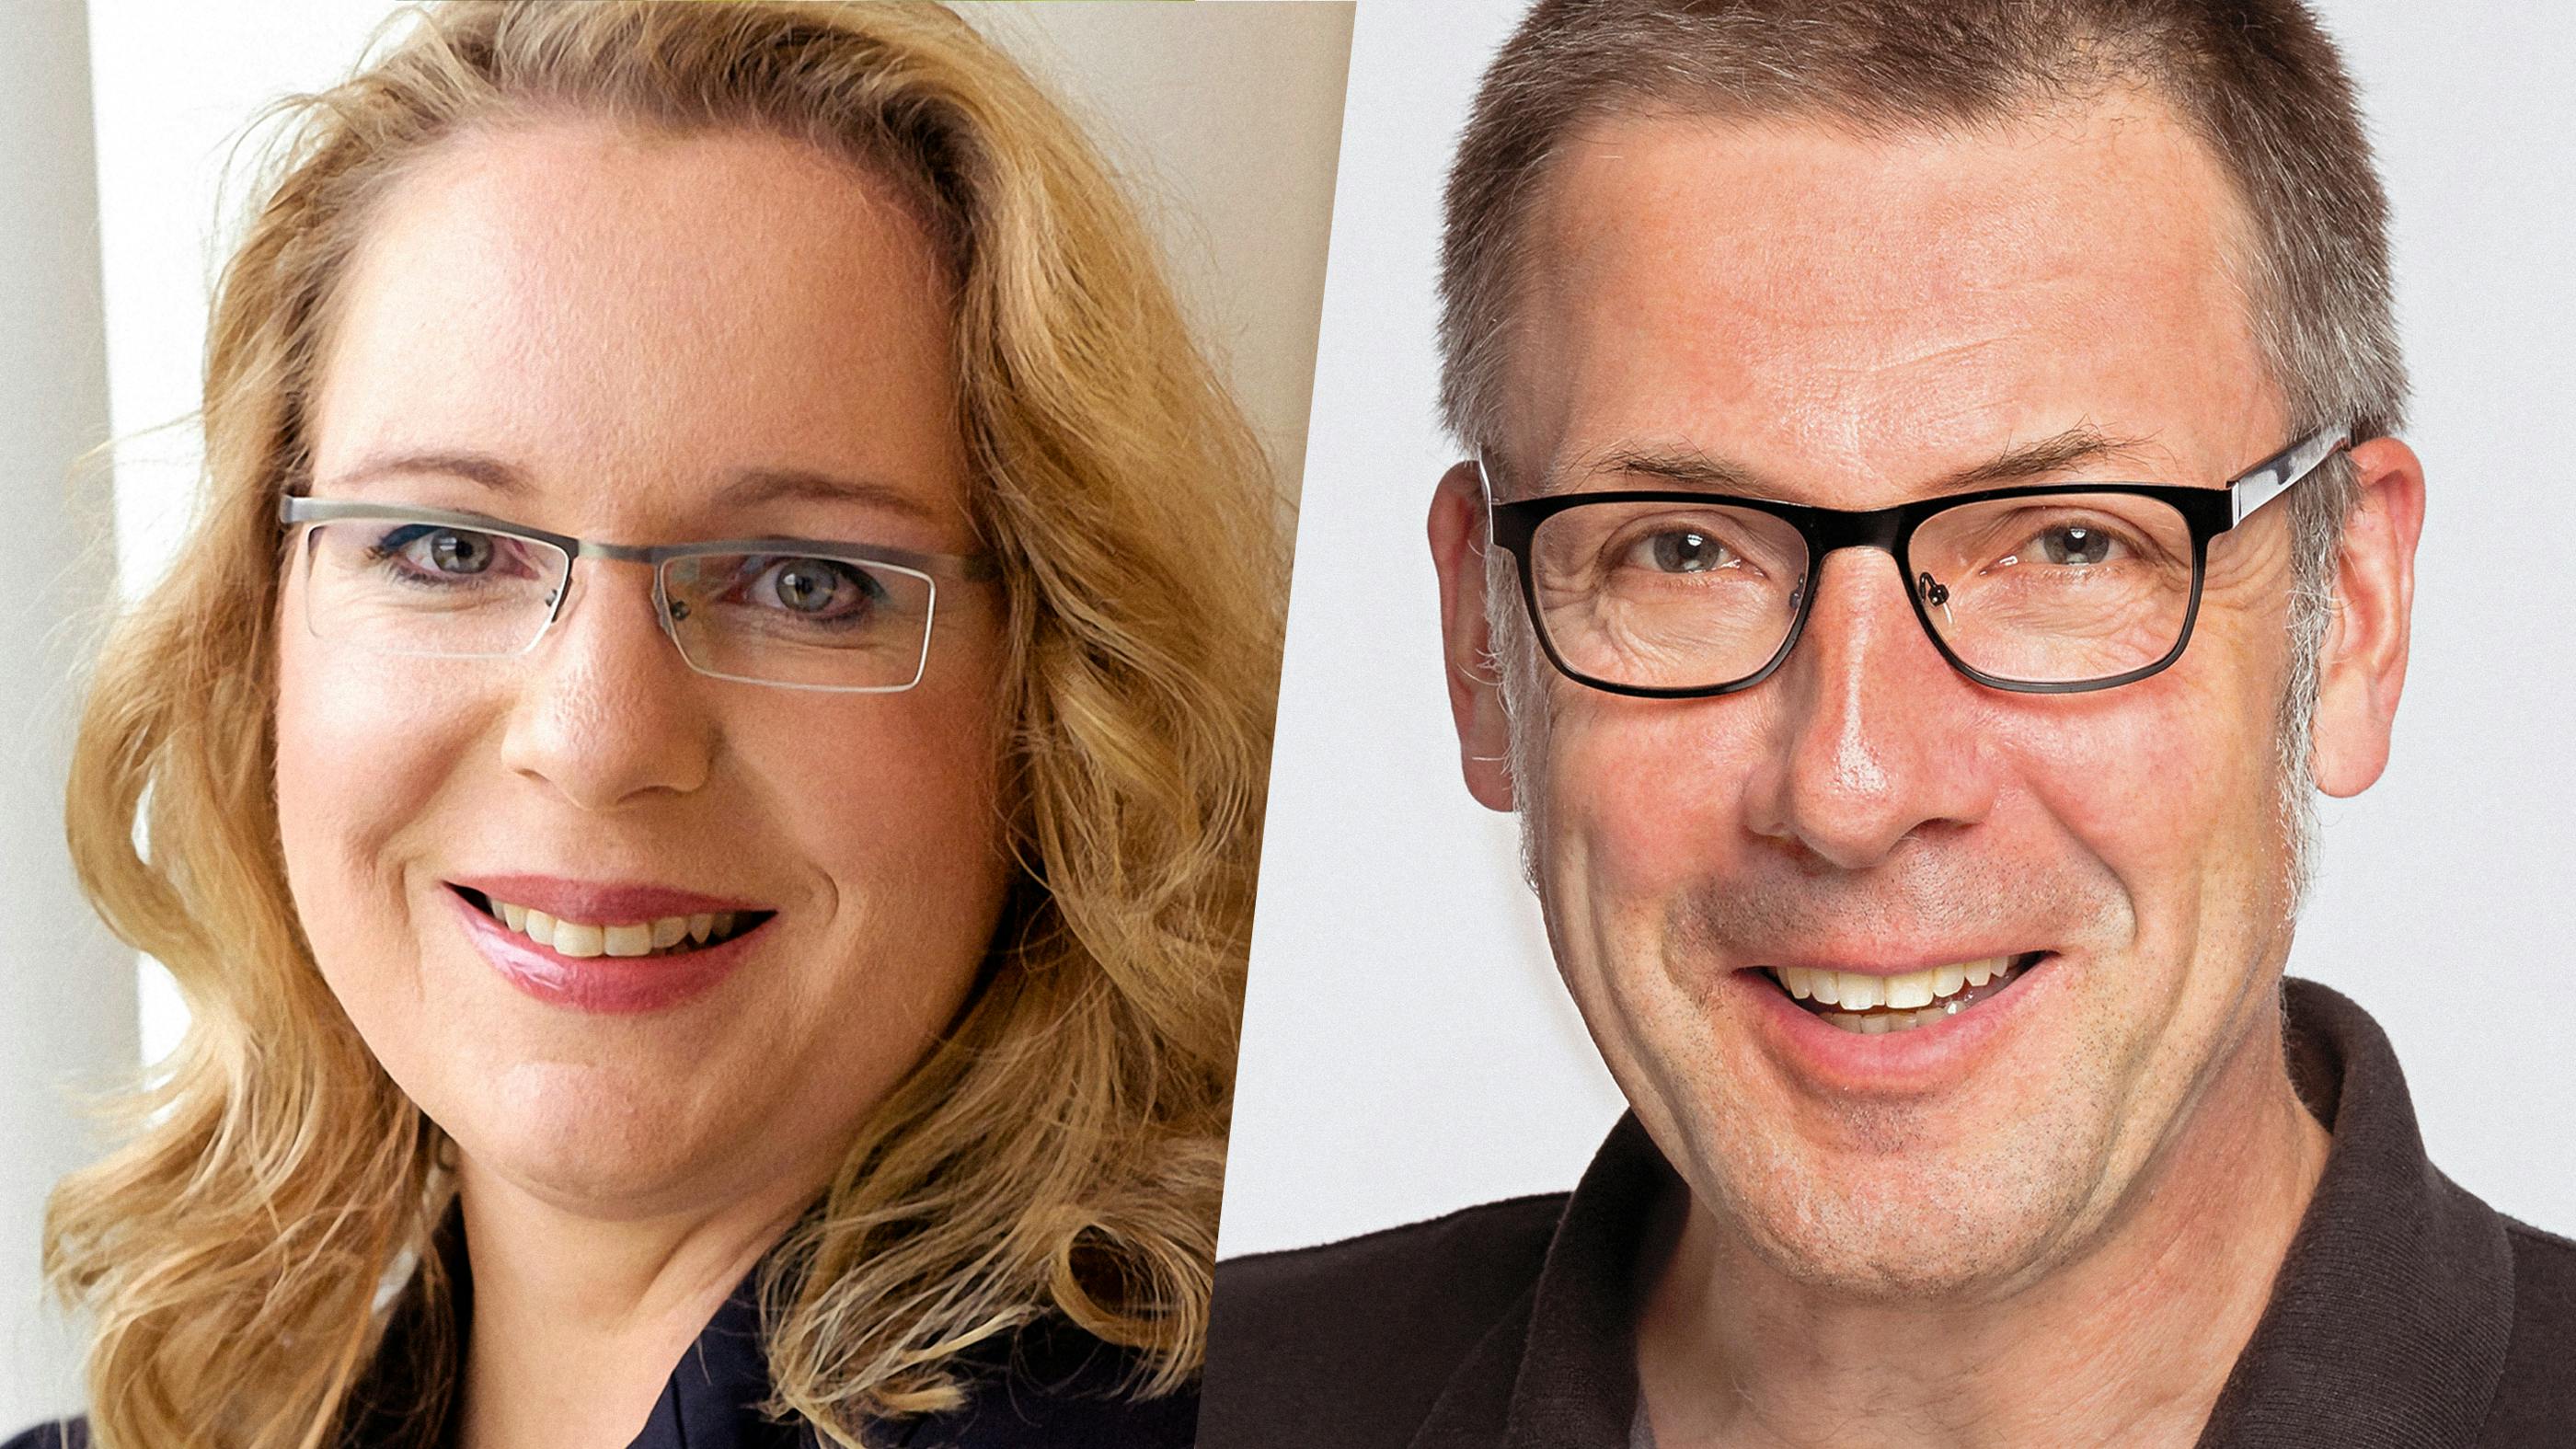 Ein zweigeteiltes Bild: Links Claudia Kemfert, rechts Niko Paech. Kemfert trägt Brille, blonde Haare offenes Lächeln. Paech trägt ebenfalls Brille und kurzes Haar. 